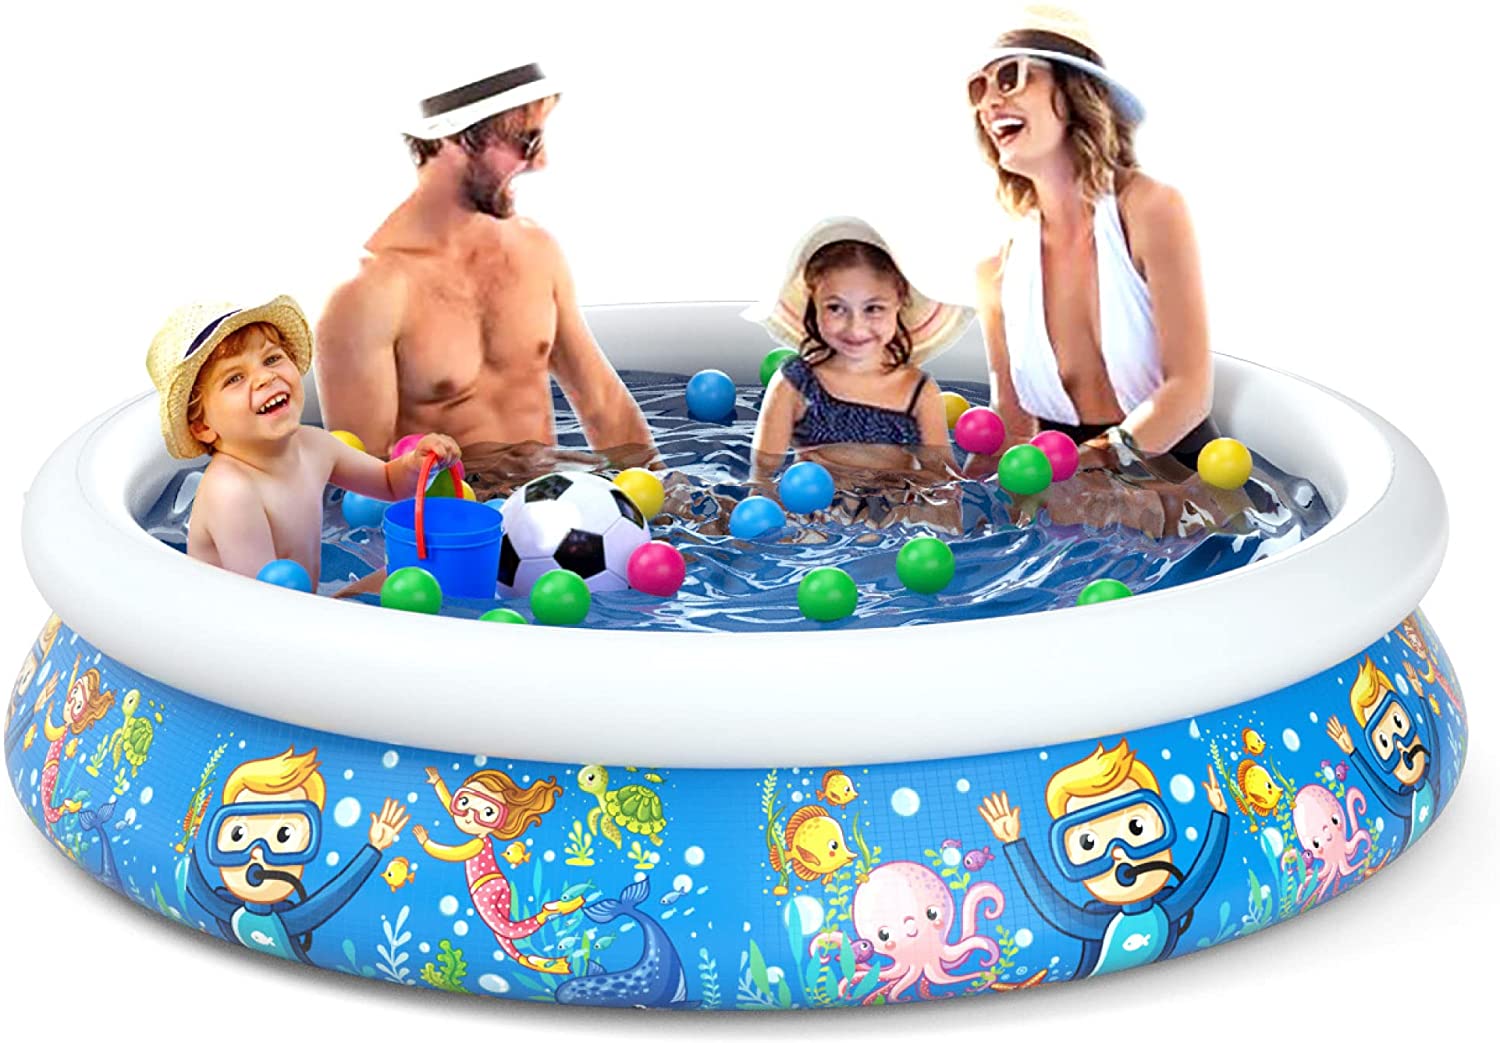 Jasonwell Inflatable Kids Kiddie Pool